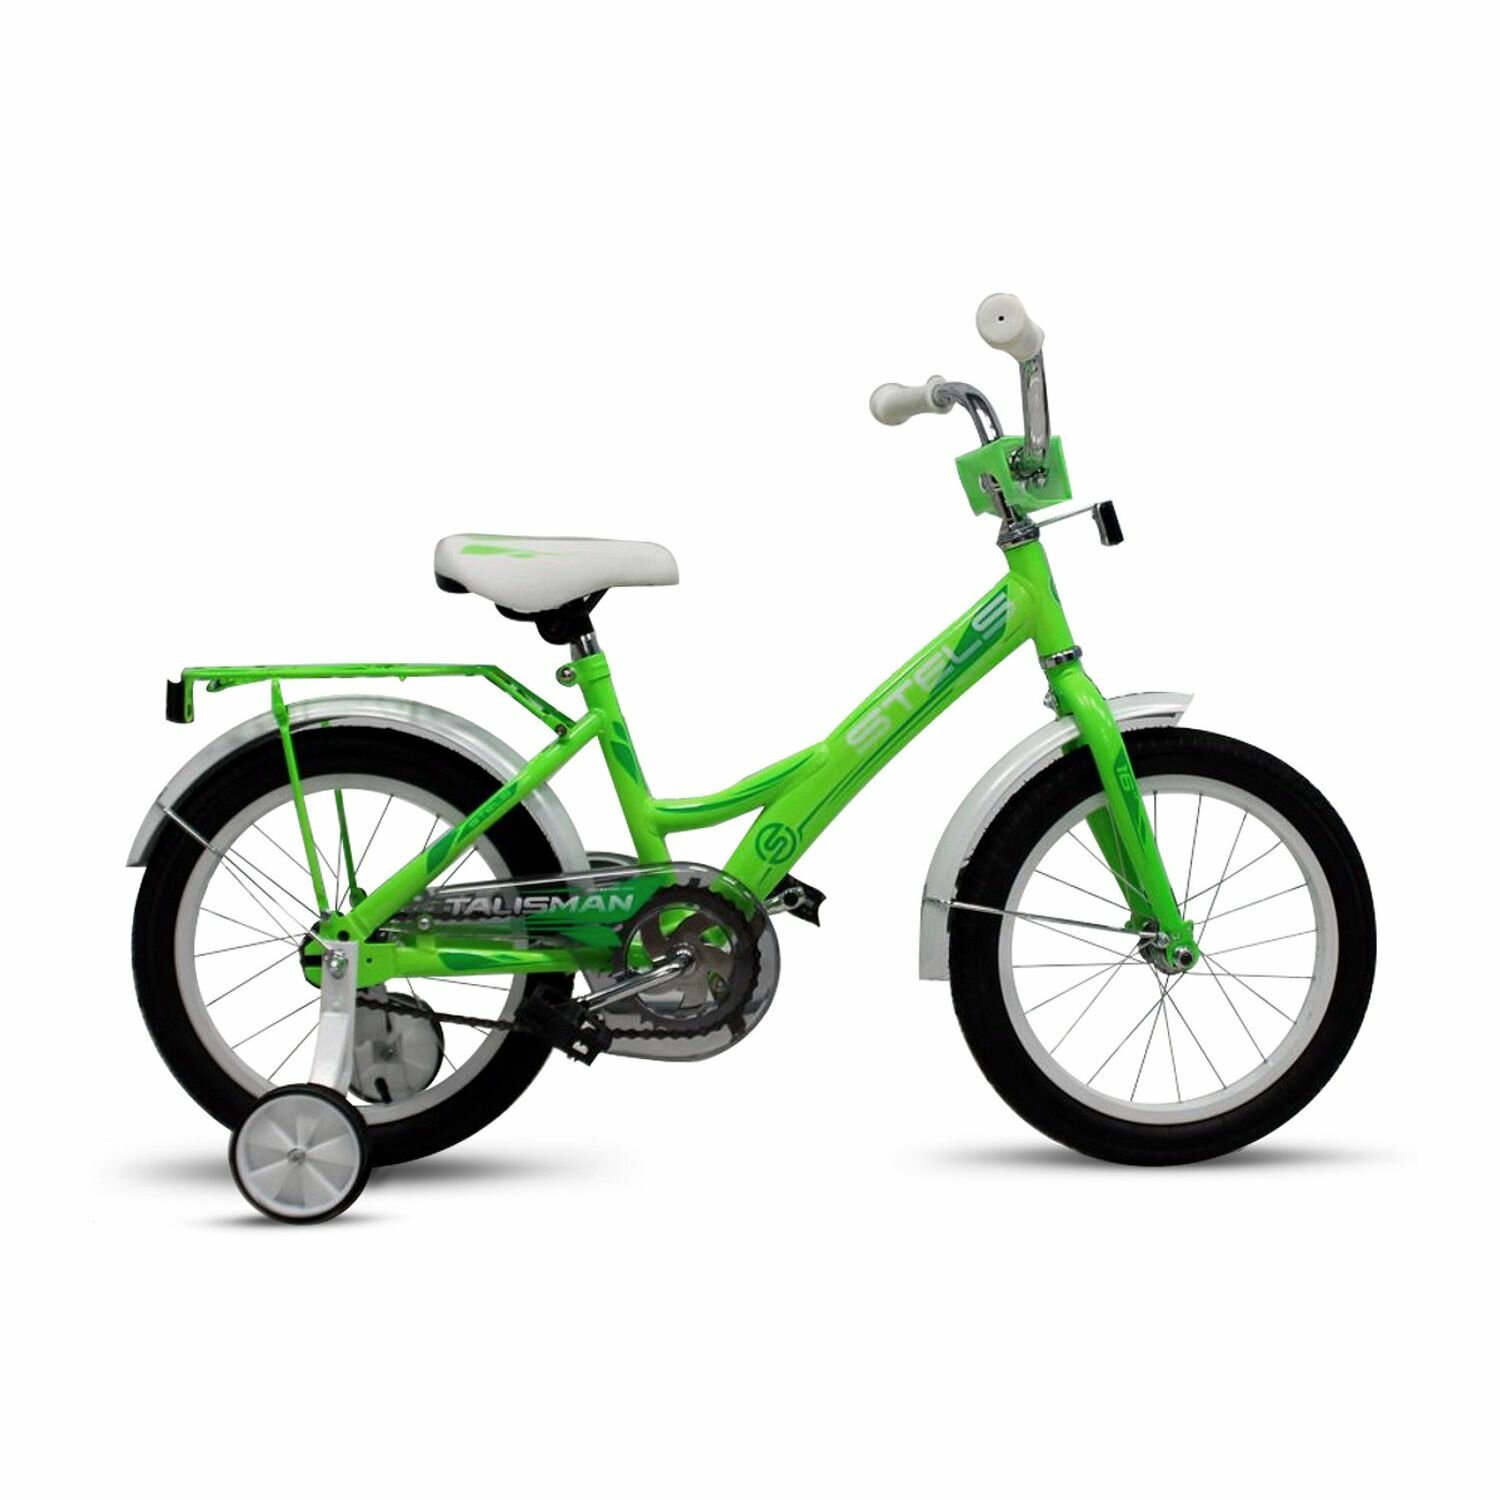 Велосипед Stels Talisman 16 Z010 (2018) 11 зеленый (требует финальной сборки)